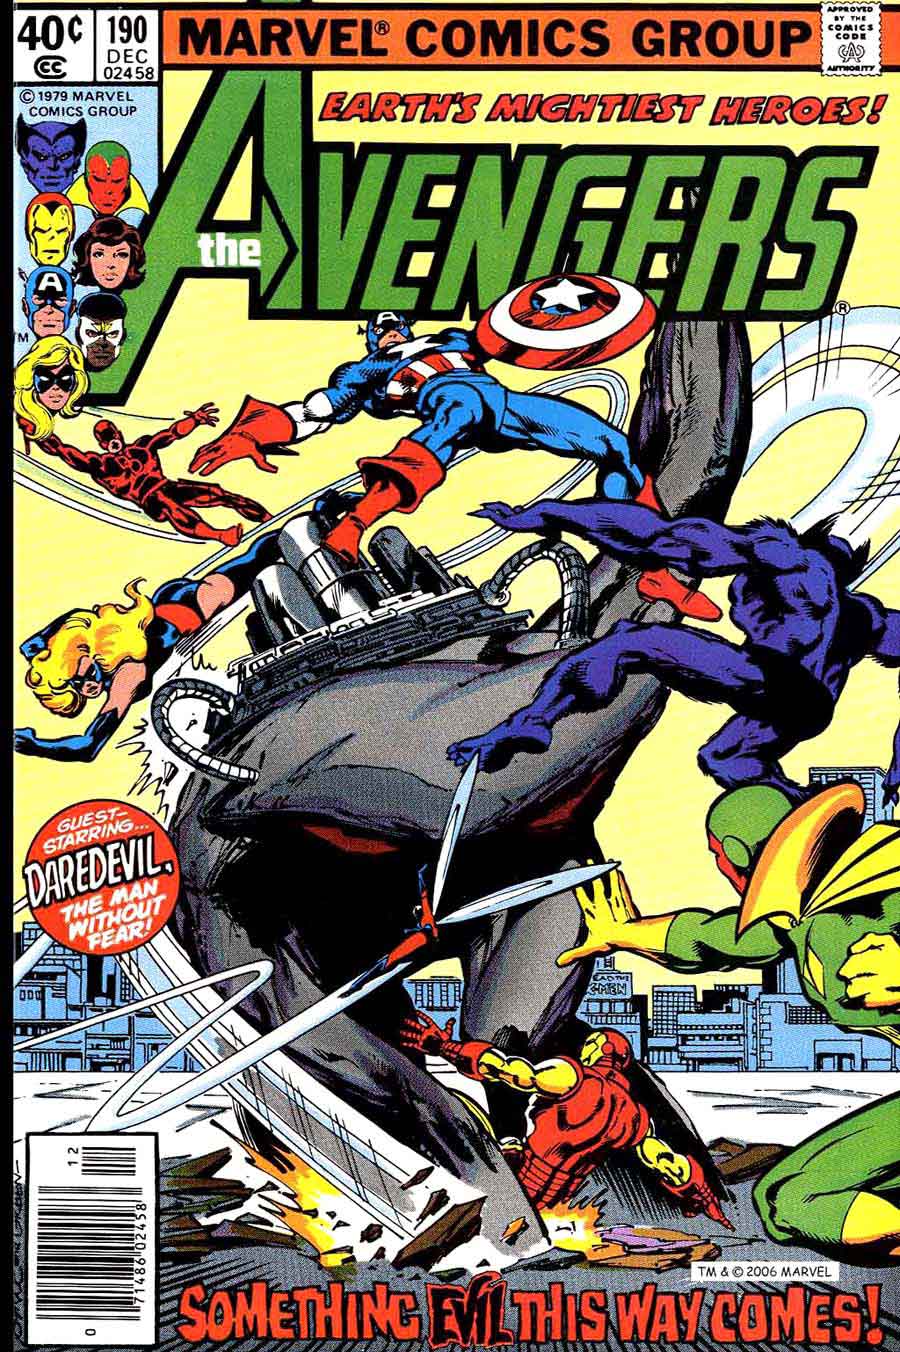 Avengers #190 marvel 1970s bronze age comic book cover art by John Byrne